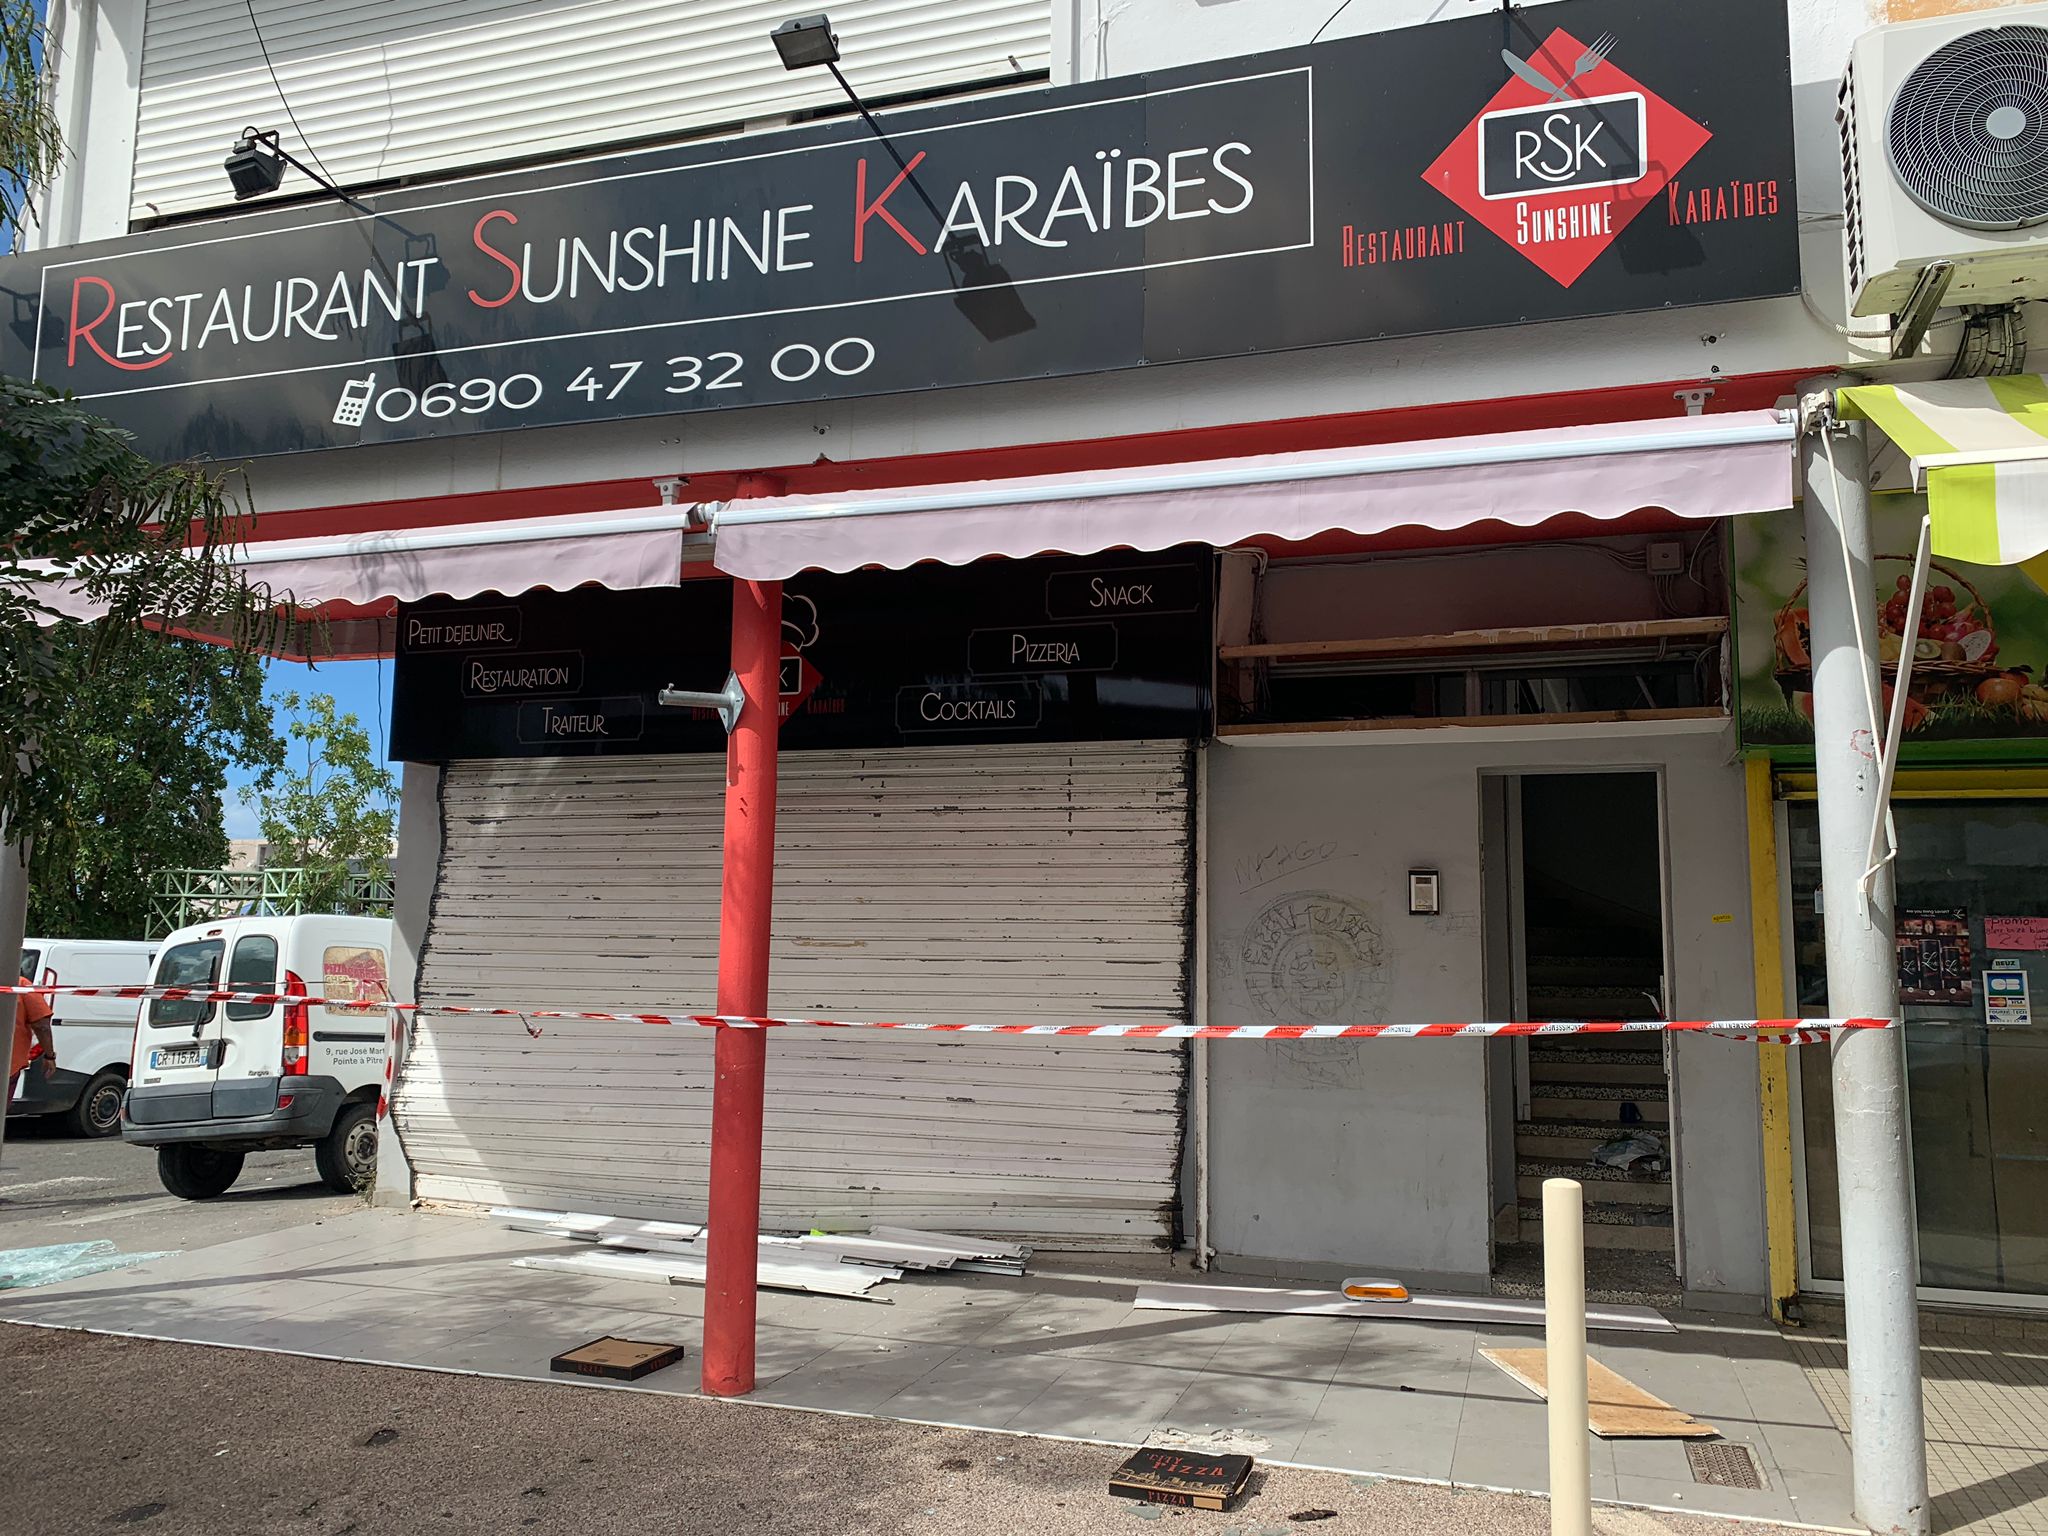     Raizet: deux blessés légers après une explosion dans un magasin

